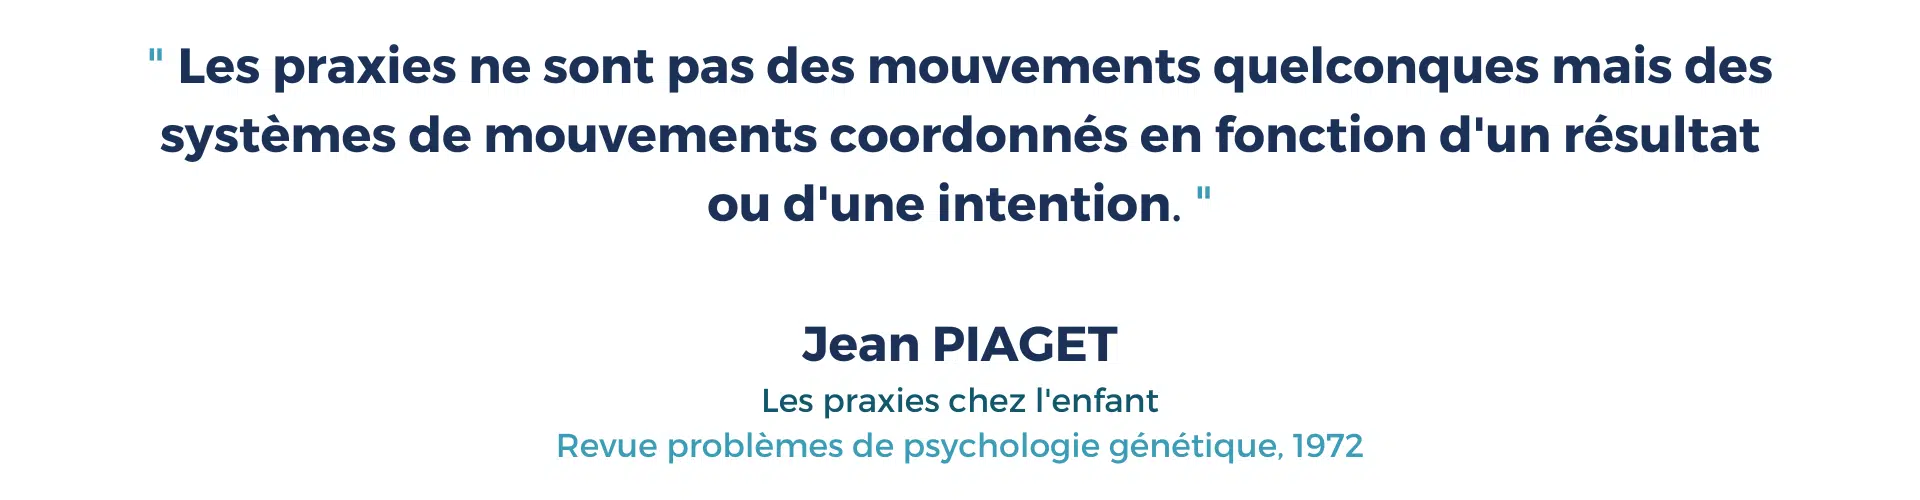 Définition Praxies selon Piaget